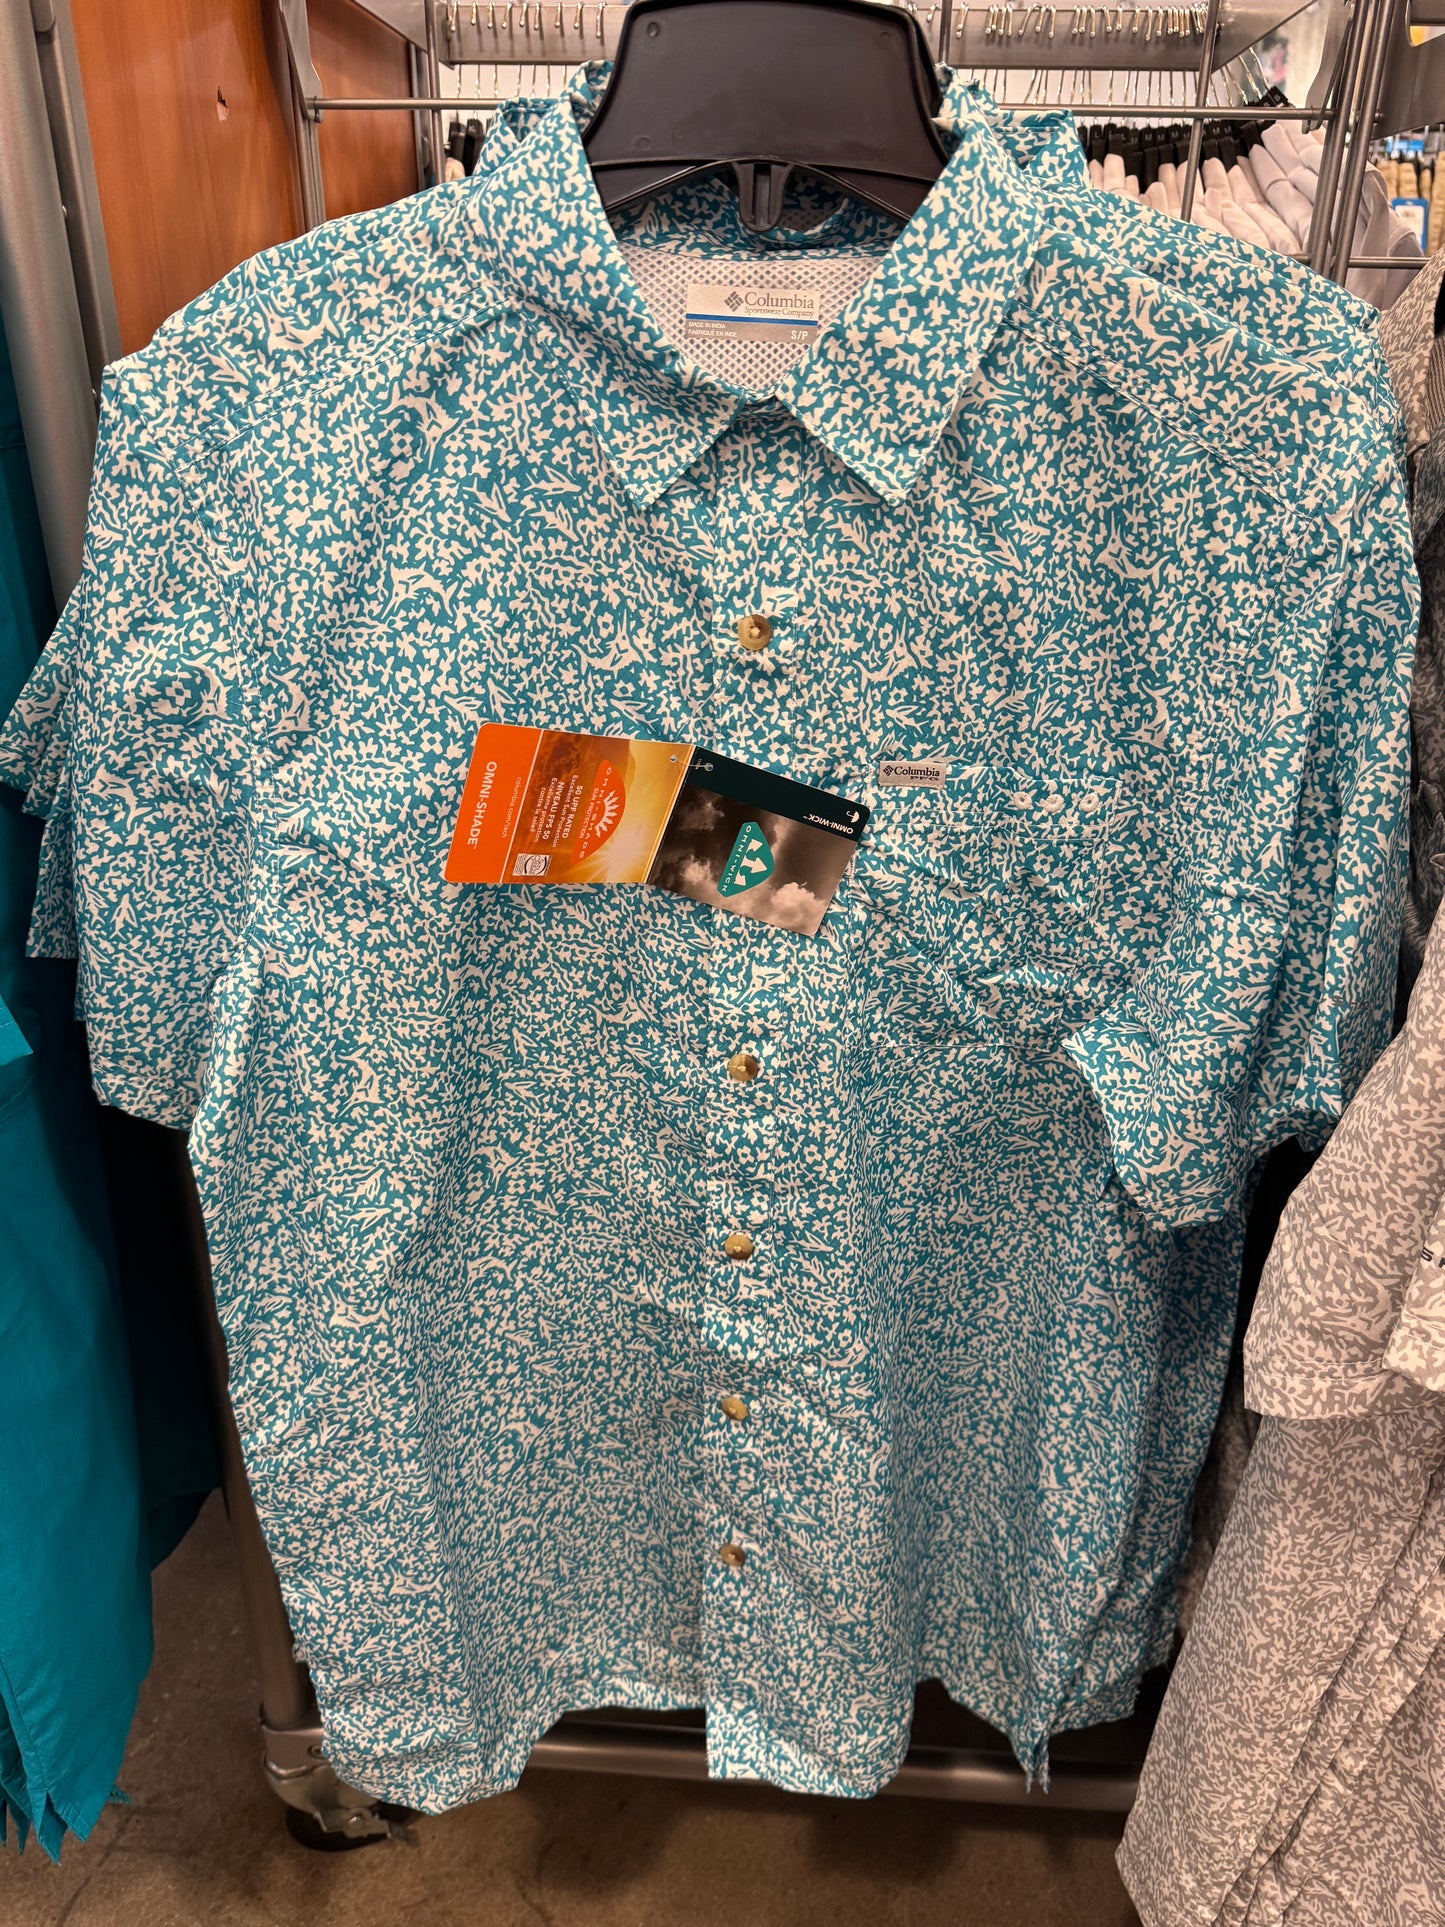 Camisa importada COLUMBIA masculina de botão manga curta com filtro solar PFG